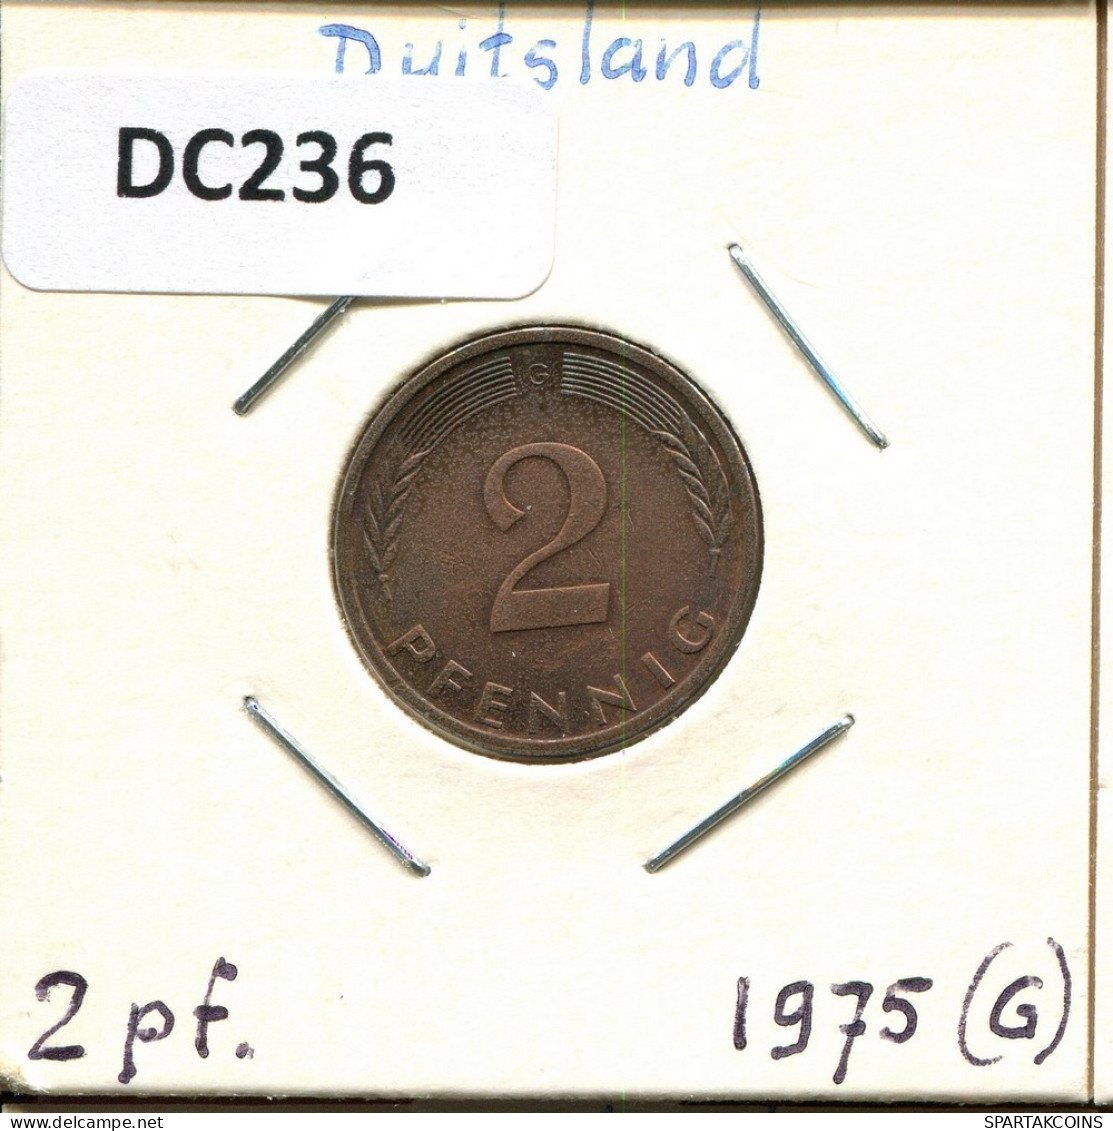 2 PFENNIG 1975 G BRD ALEMANIA Moneda GERMANY #DC236.E.A - 2 Pfennig